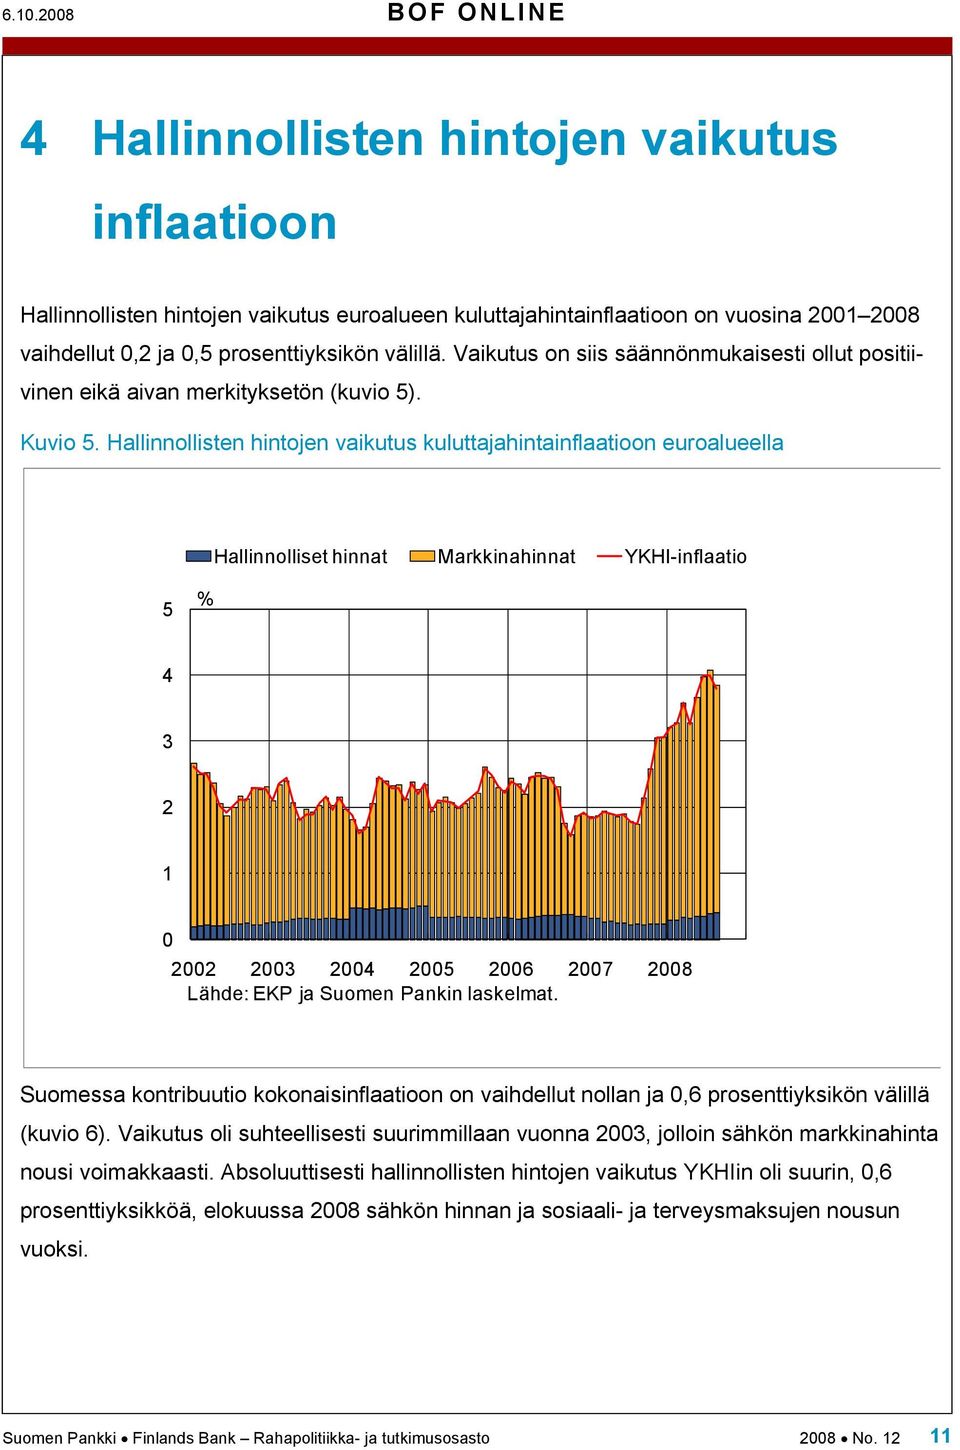 Hallinnollisten hintojen vaikutus kuluttajahintainflaatioon euroalueella Hallinnolliset hinnat Markkinahinnat YKHI-inflaatio 5 % 4 3 2 1 0 2002 2003 2004 2005 2006 2007 2008 Lähde: EKP ja Suomen